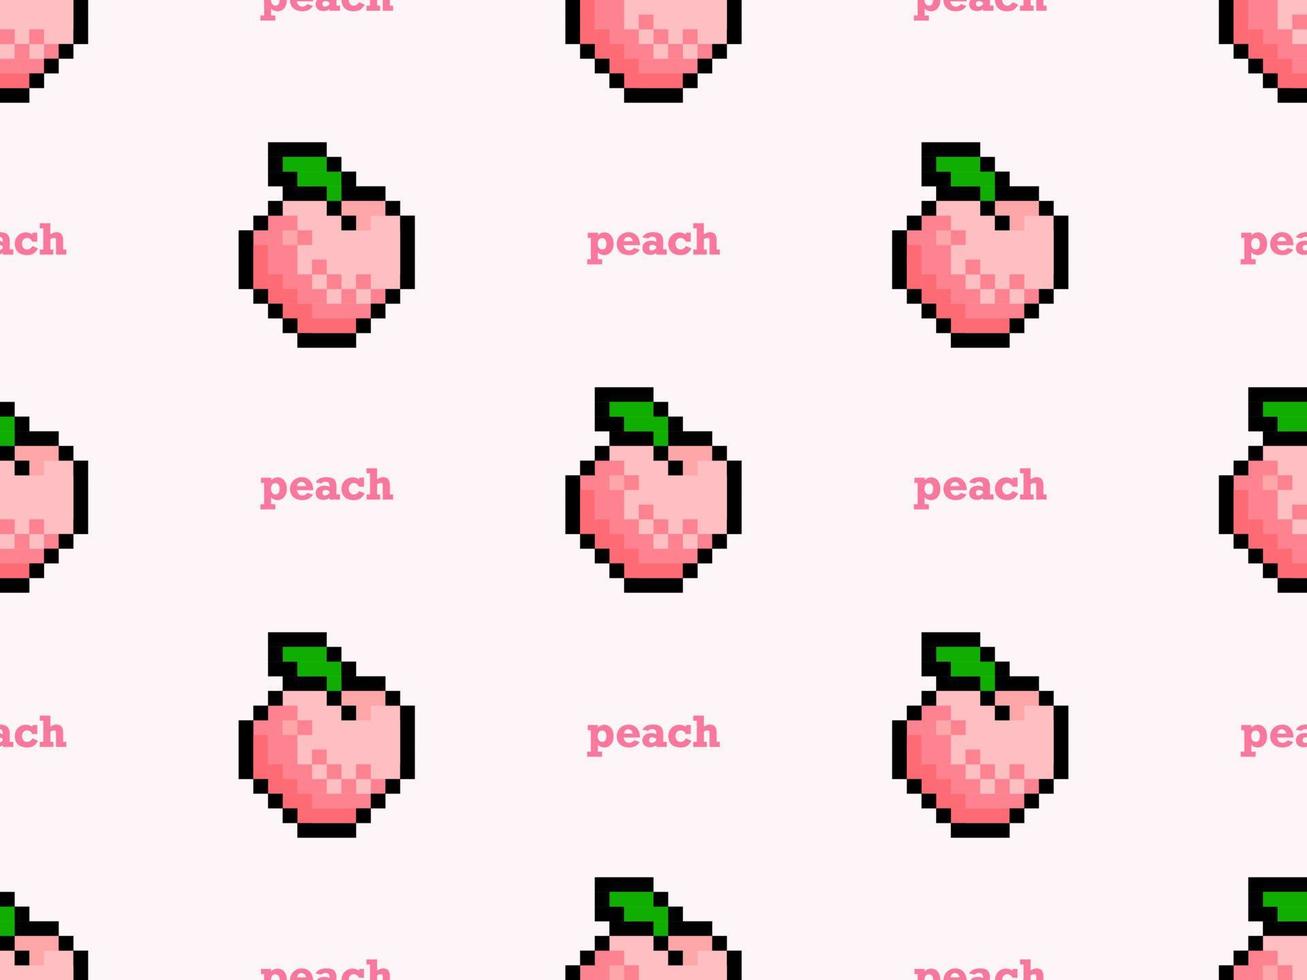 padrão perfeito de personagem de desenho animado de pêssego no estilo de fundo rosa.pixel vetor